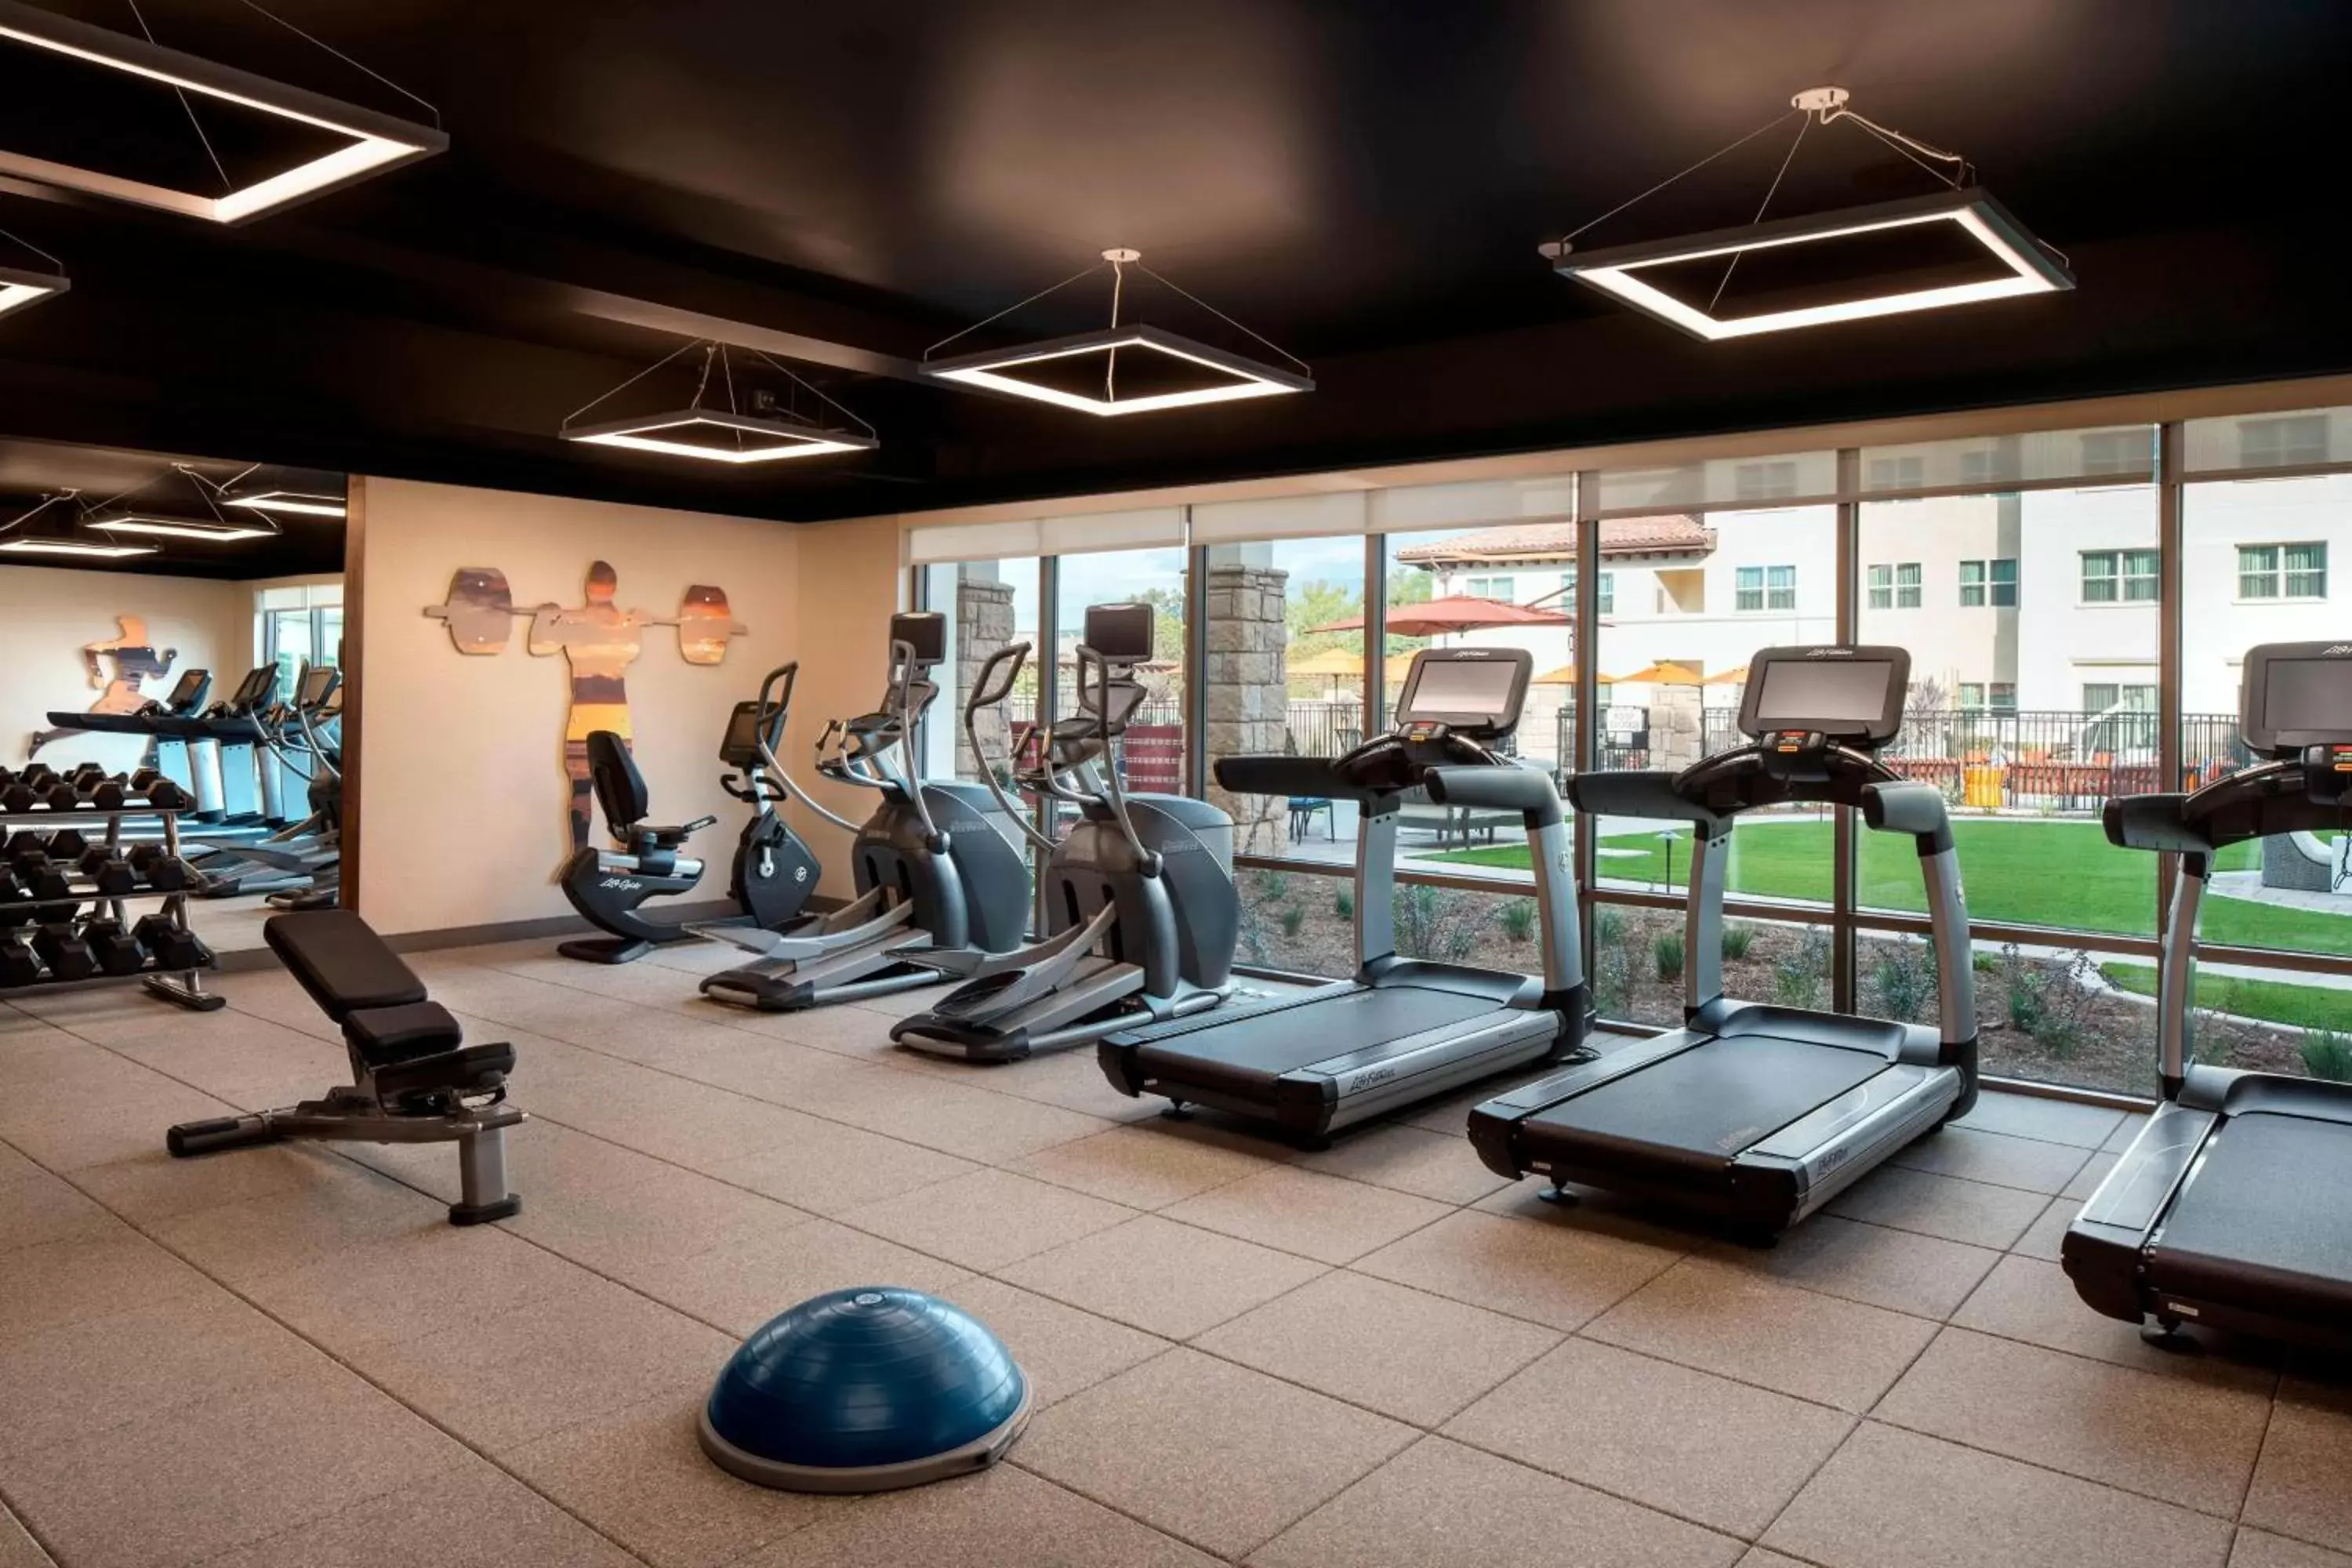 Fitness centre/facilities, Fitness Center/Facilities in Residence Inn by Marriott Santa Barbara Goleta